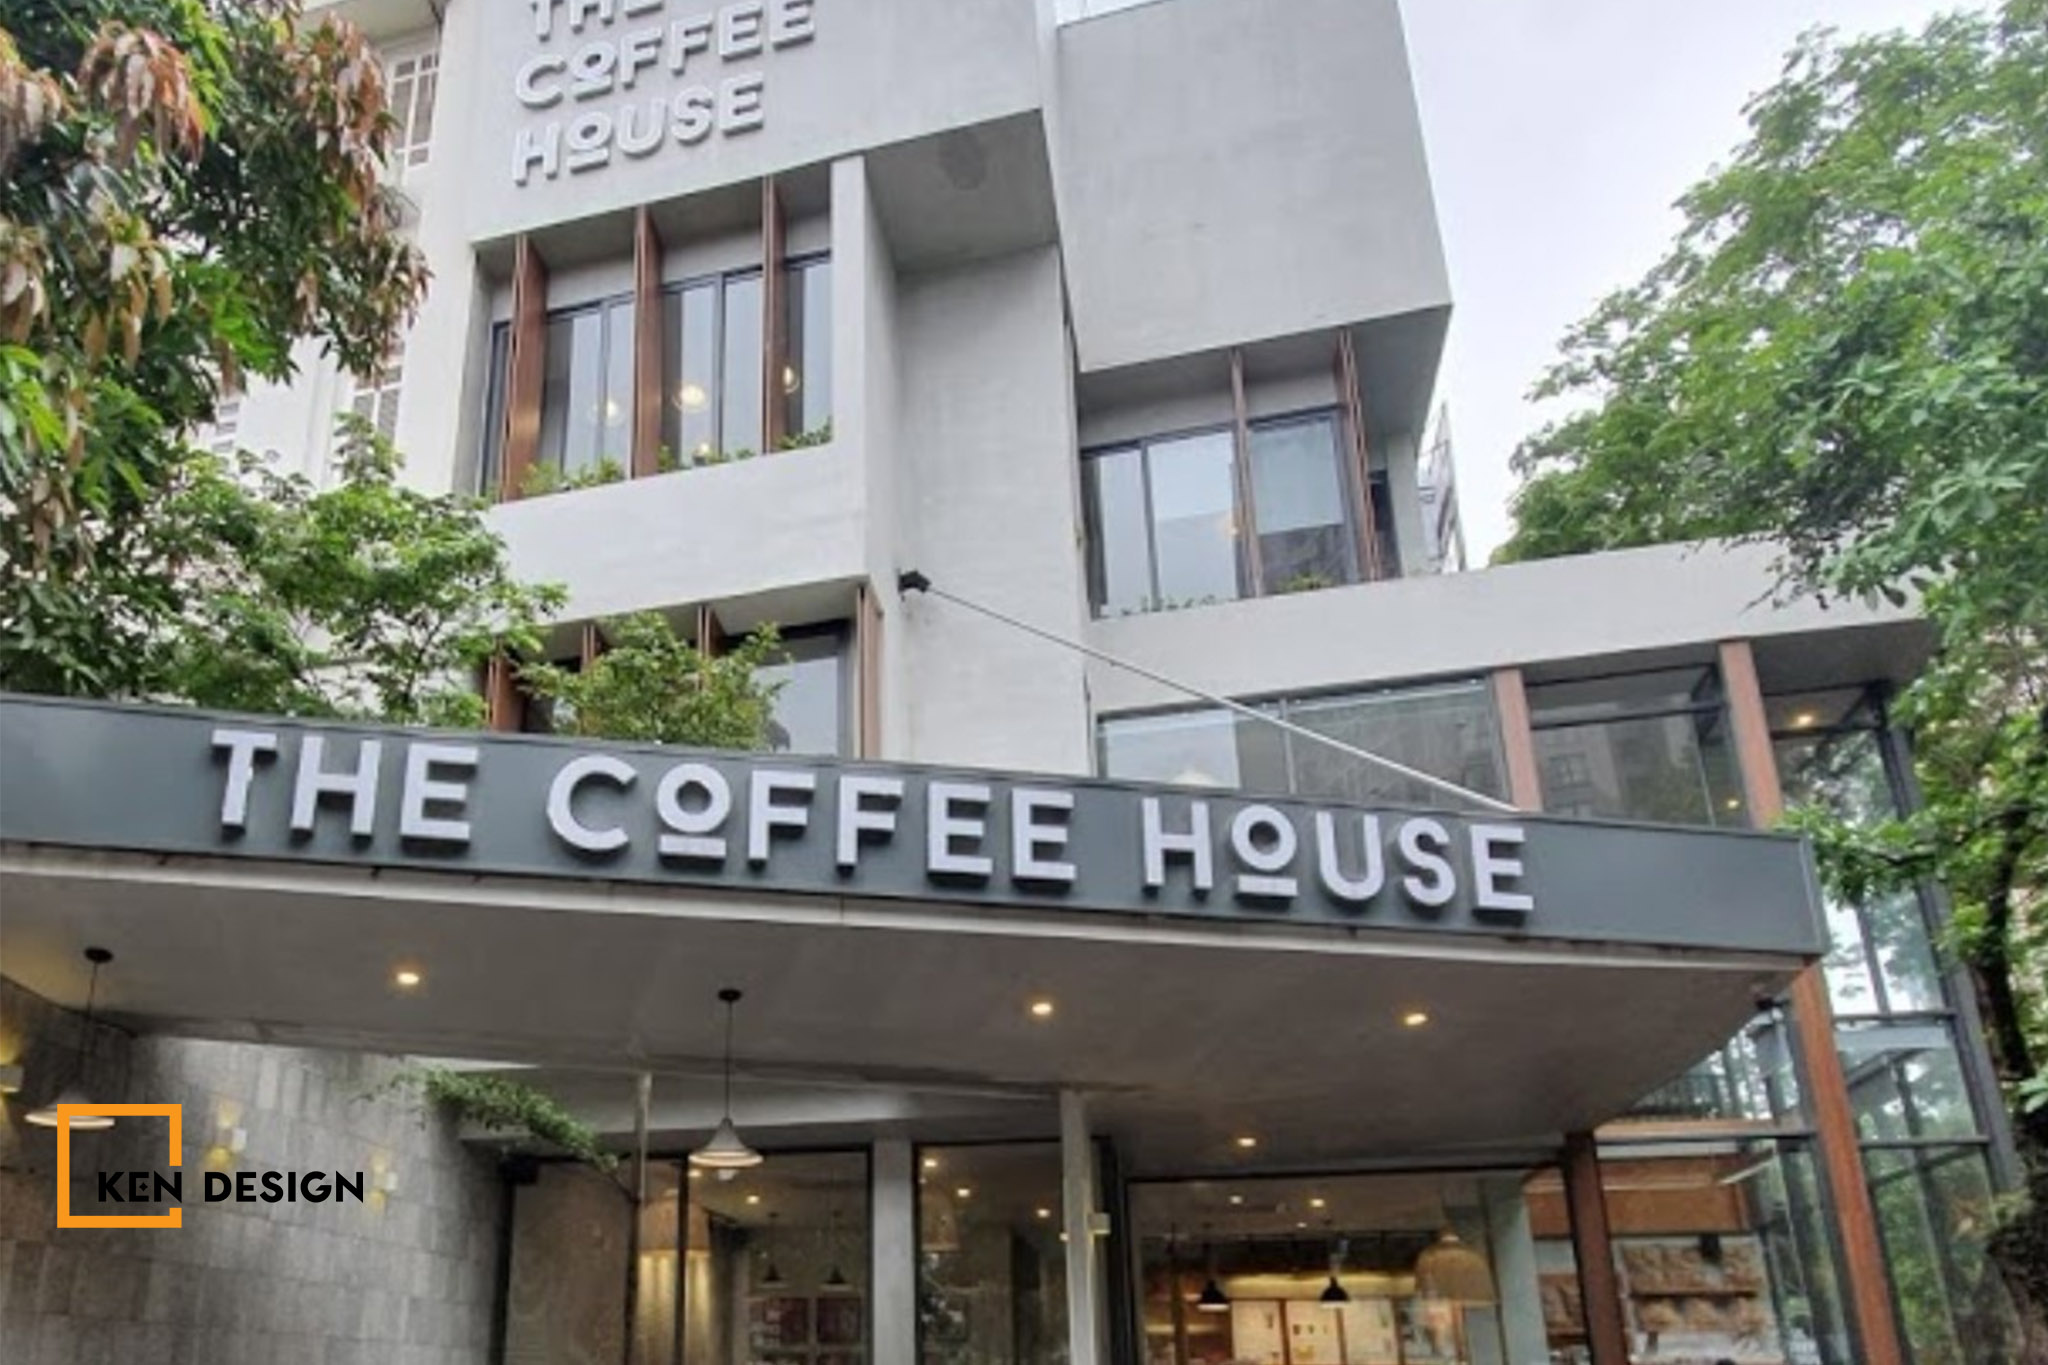 QUÁN CAFE ĐẸP THE COFFEE HOUSE - XÍCH LẠI GẦN NHAU HƠN.